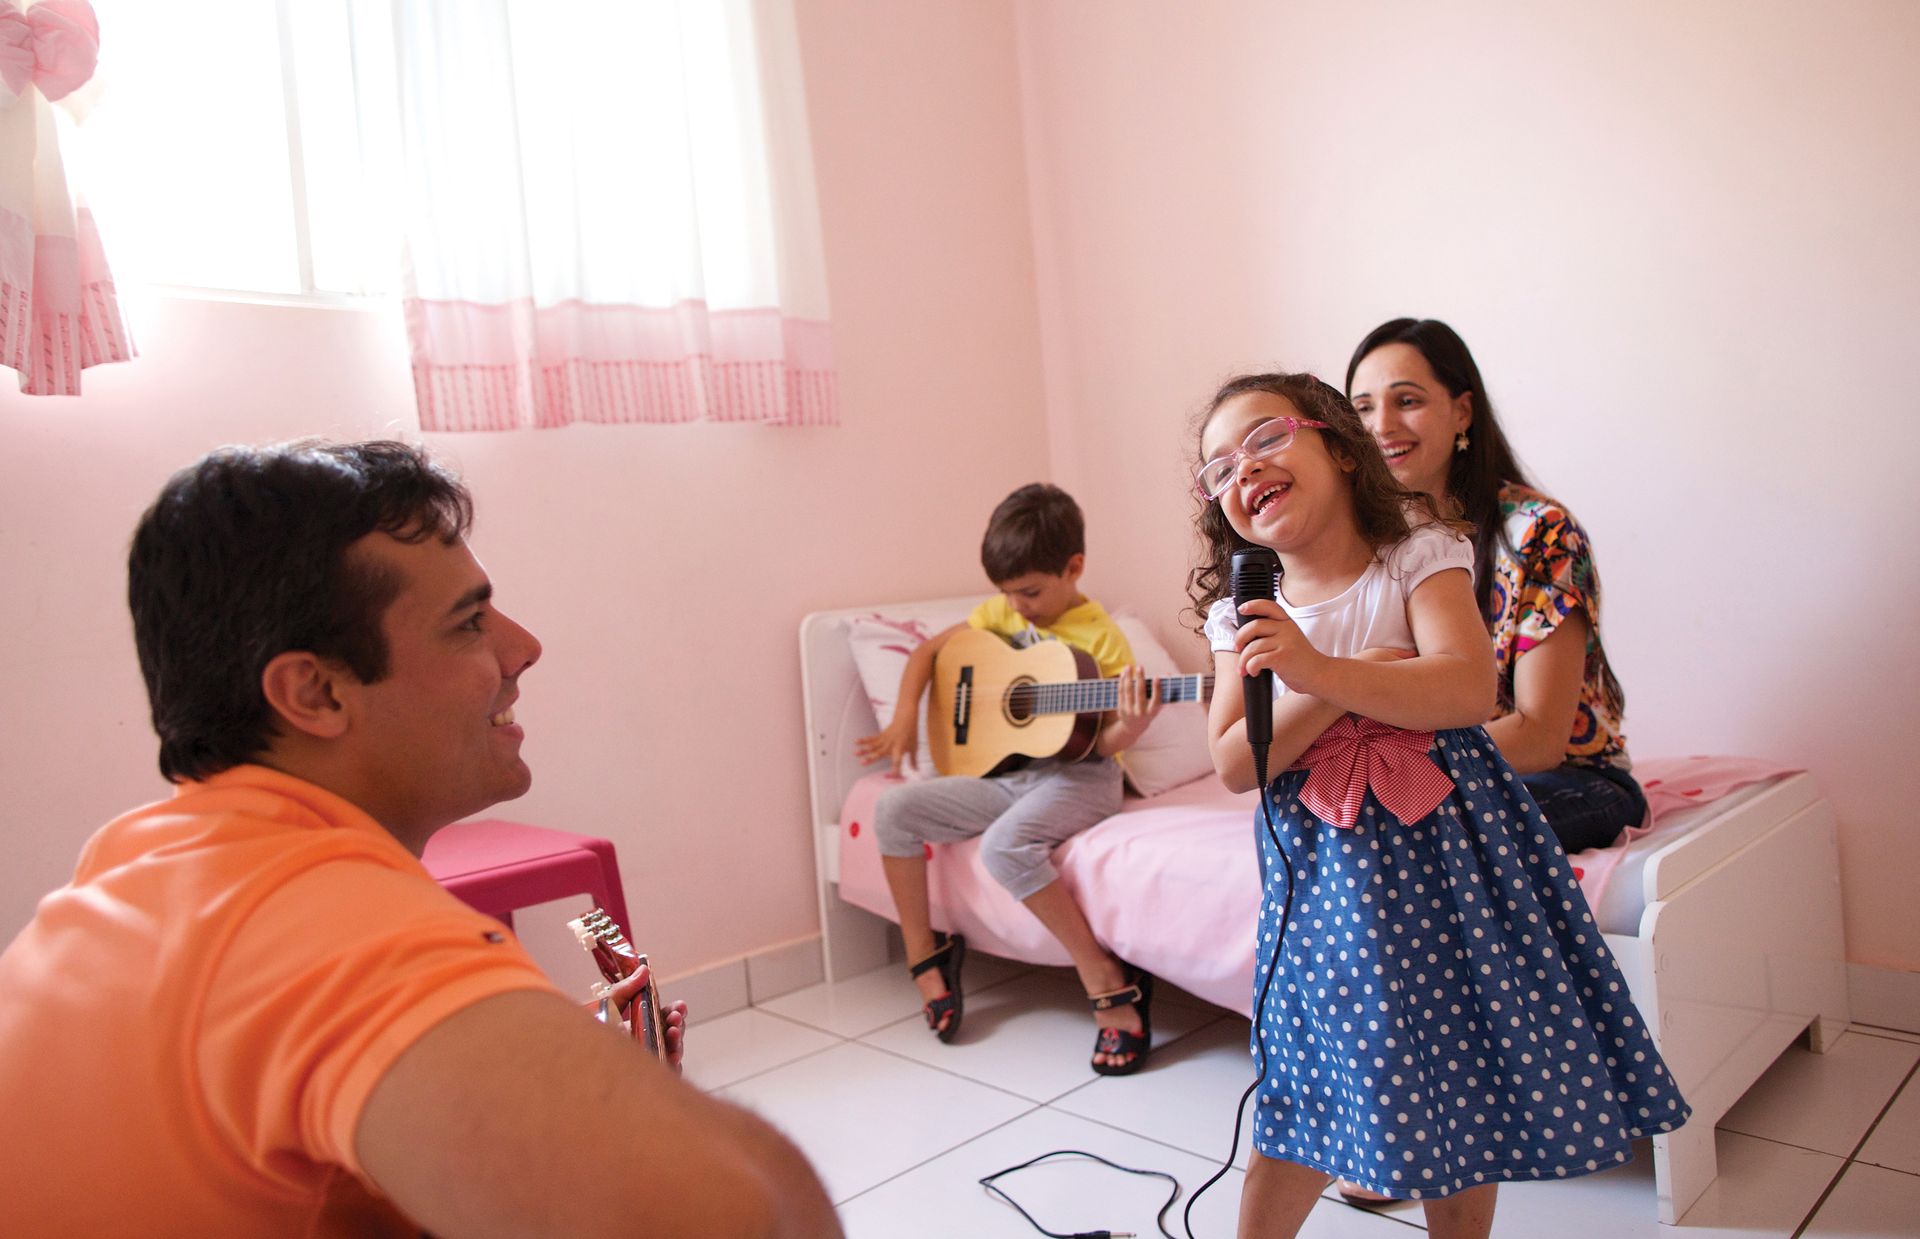 Мурило и Келли Рибейро любят проводить время со своими детьми. Их дочь поет, а Мурило с сыном аккомпанируют ей на гитаре.